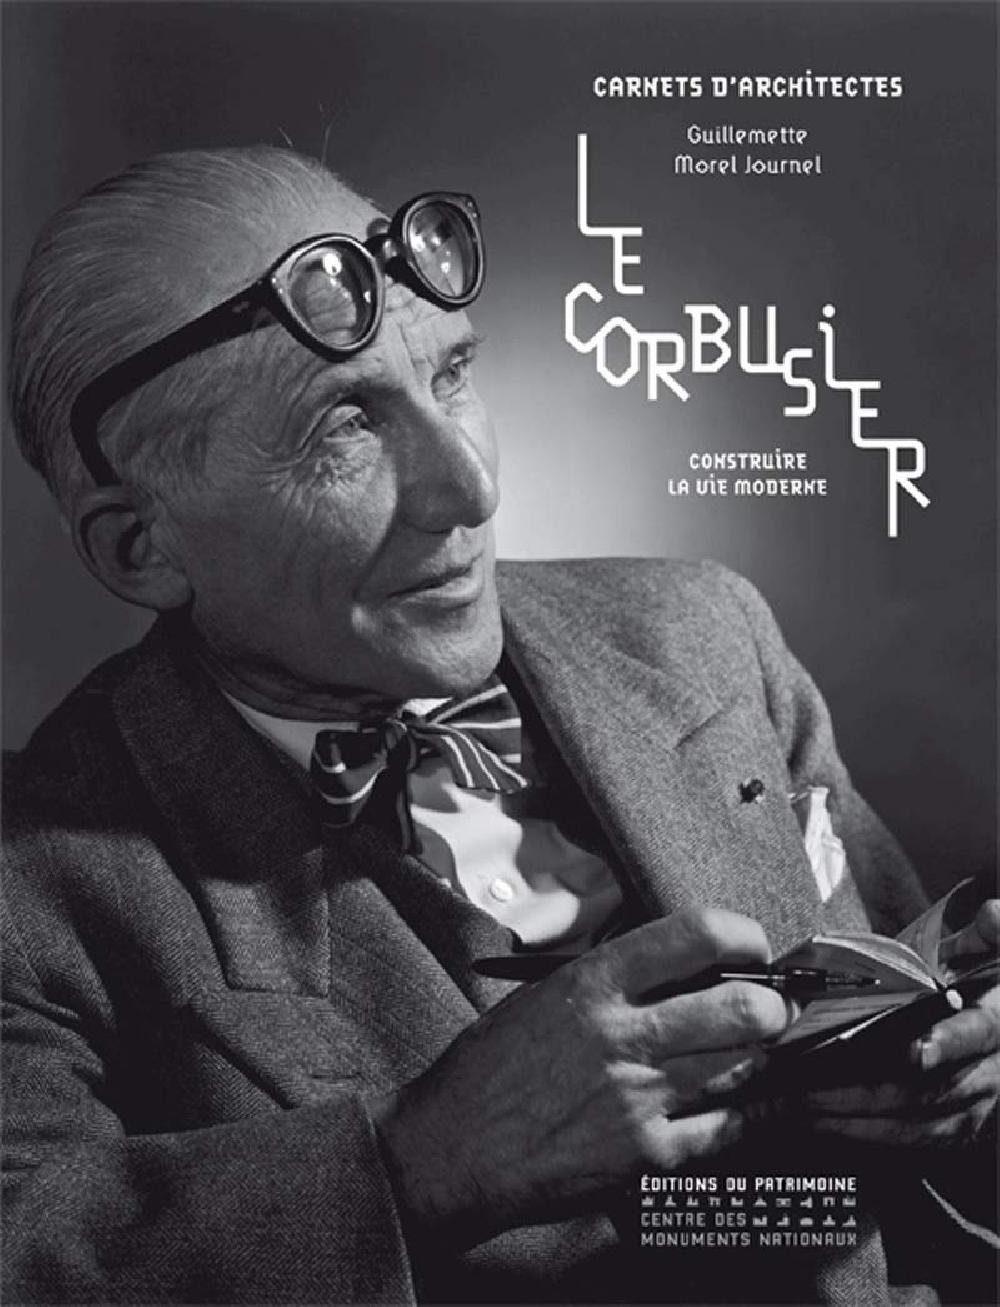 Le Corbusier - Construire la vie moderne / Carnets d'architectes